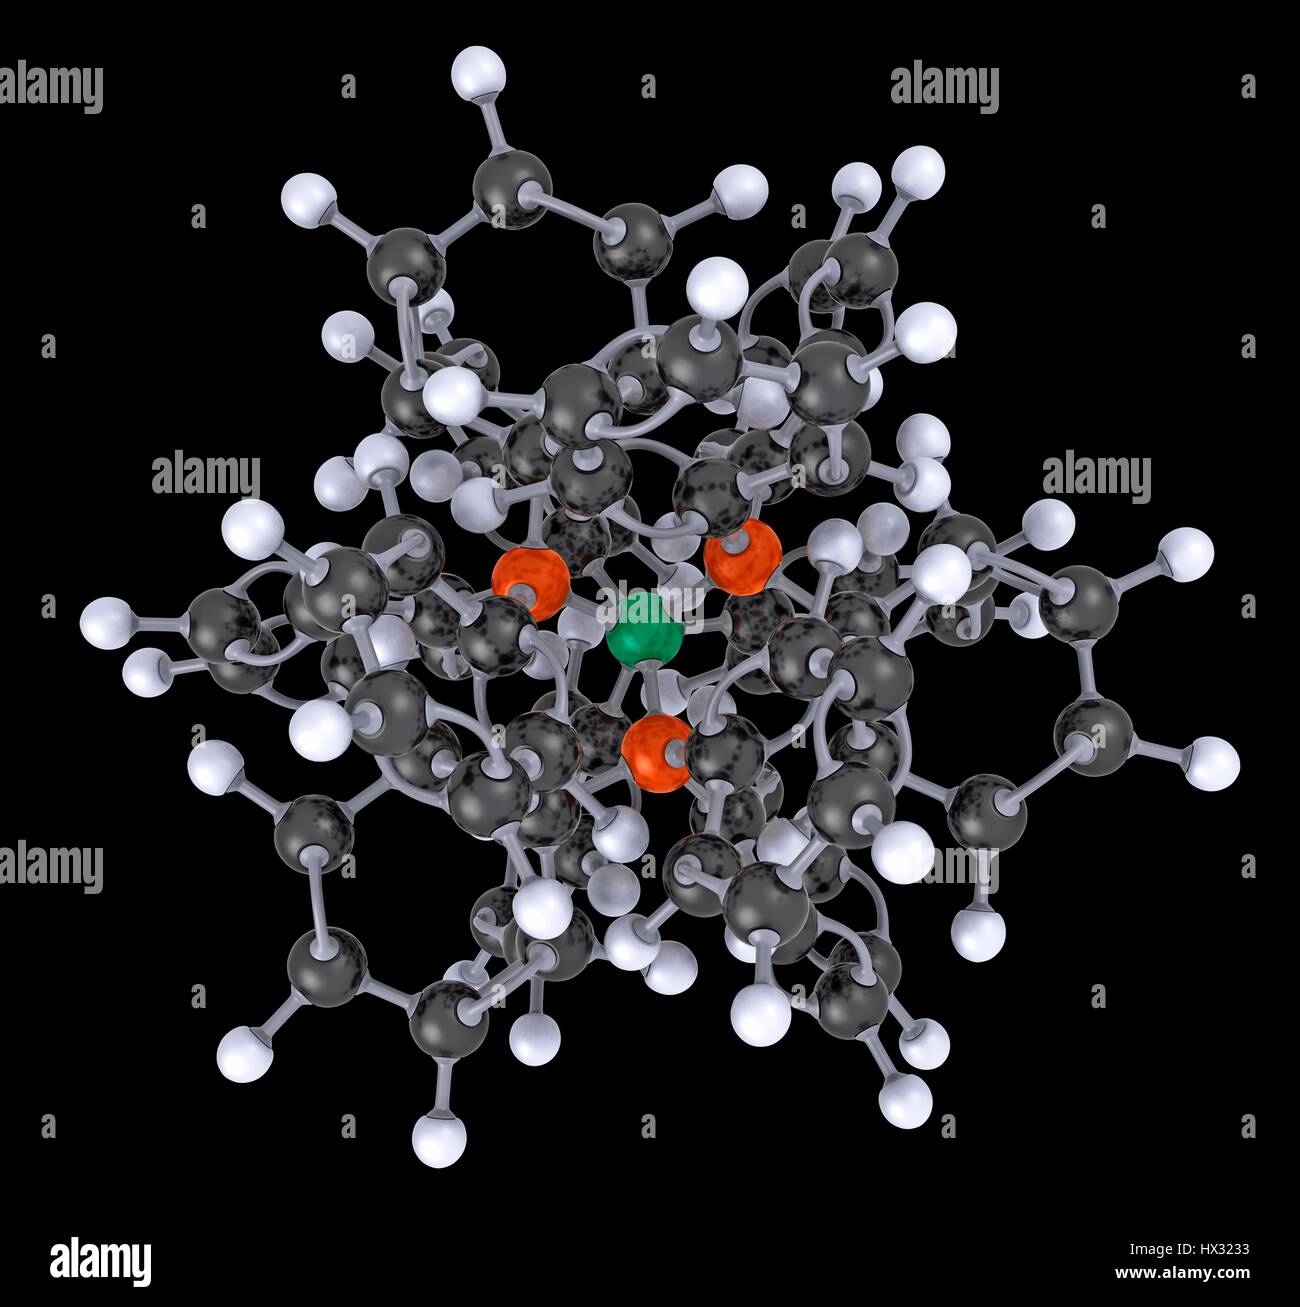 Ball und Stock 3D-Modell des tetrakis(triphenylphosphine)palladium(0) Molekül oder tetrakis(triphenylphosphine)platinum(0) Molekül. Atome sind farblich gekennzeichnet (Carbon - schwarz, Phosphor - rot, Palladium oder Platiunum - grün, Wasserstoff - weiß). PD habe ich als Katalysator für Palladium-katalysierte Kupplungsreaktionen. Anwendungen umfassen die Heck-Reaktion, Suzuki Negishi-Kupplung, Kupplung, Stille-Kupplung und Sonogashira-Kupplung. Stockfoto